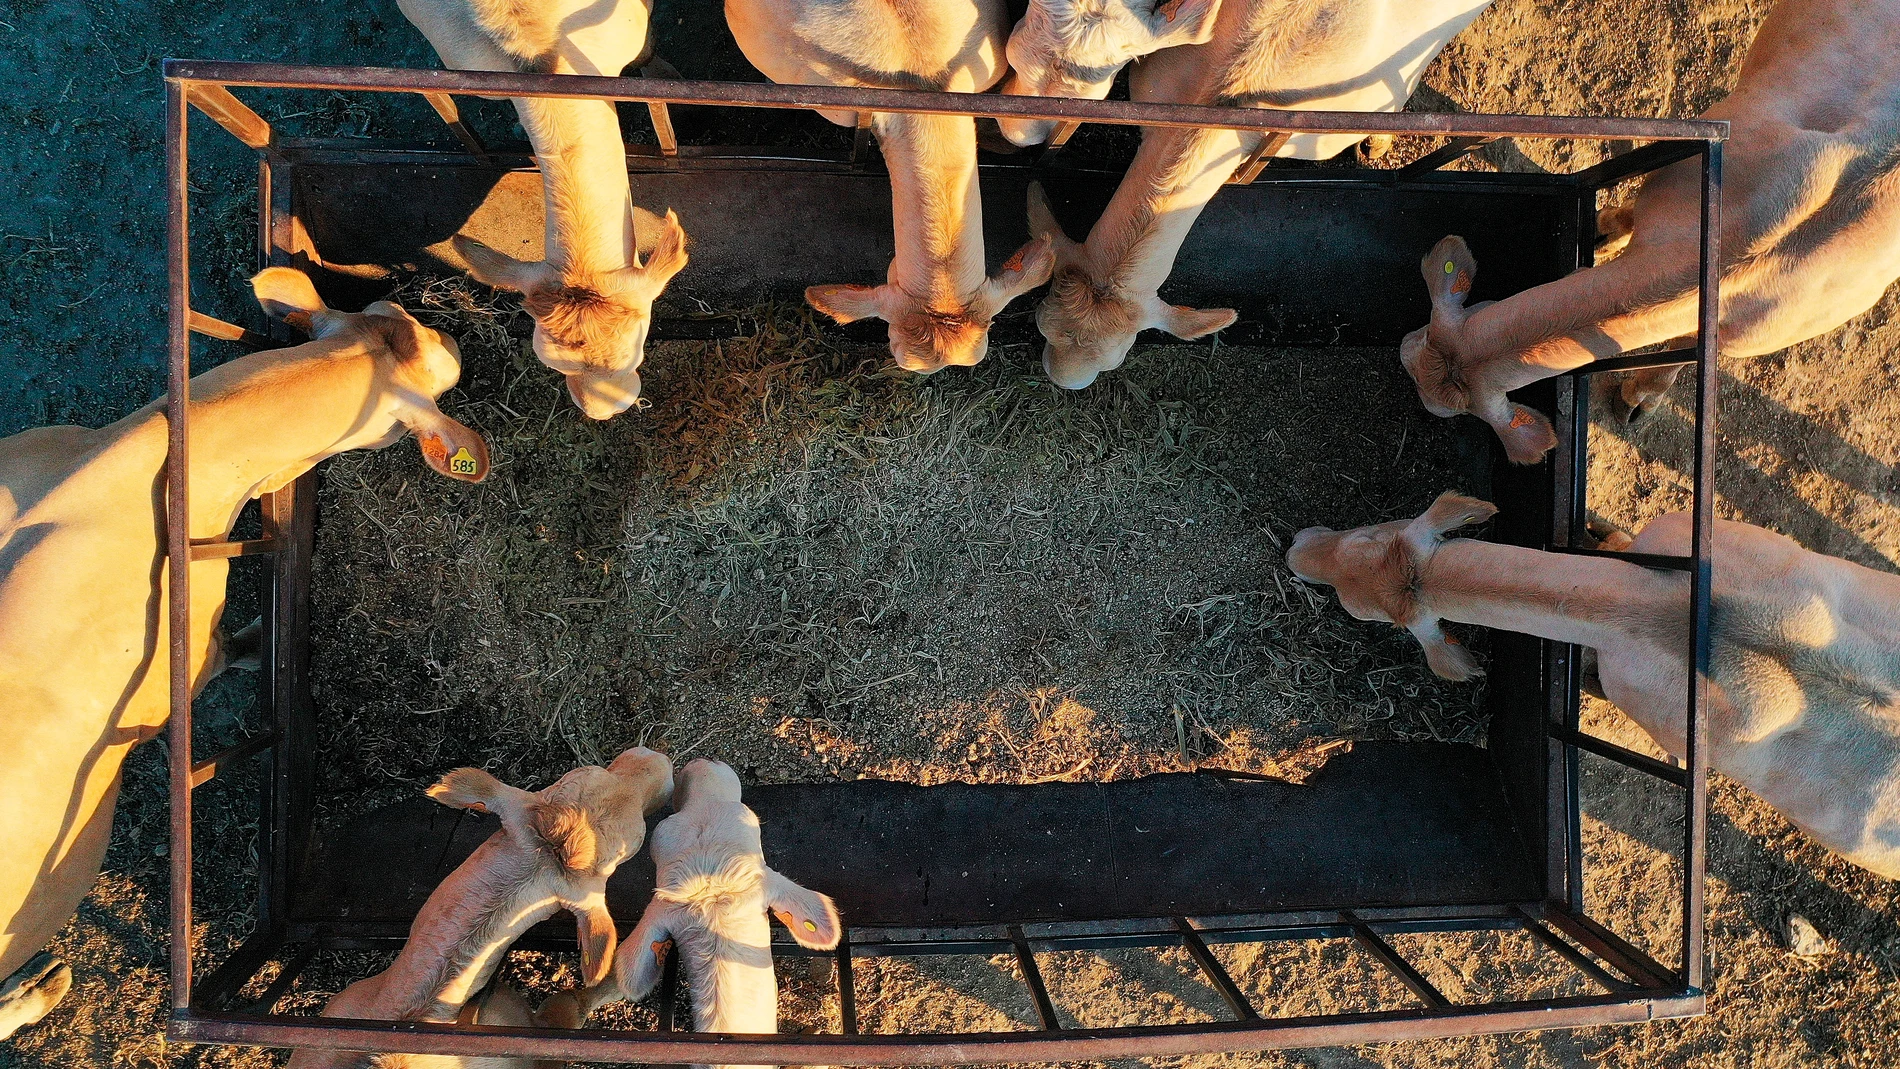 Imagen tomada desde un dron donde varias vacas se alimentan de paja en un prado